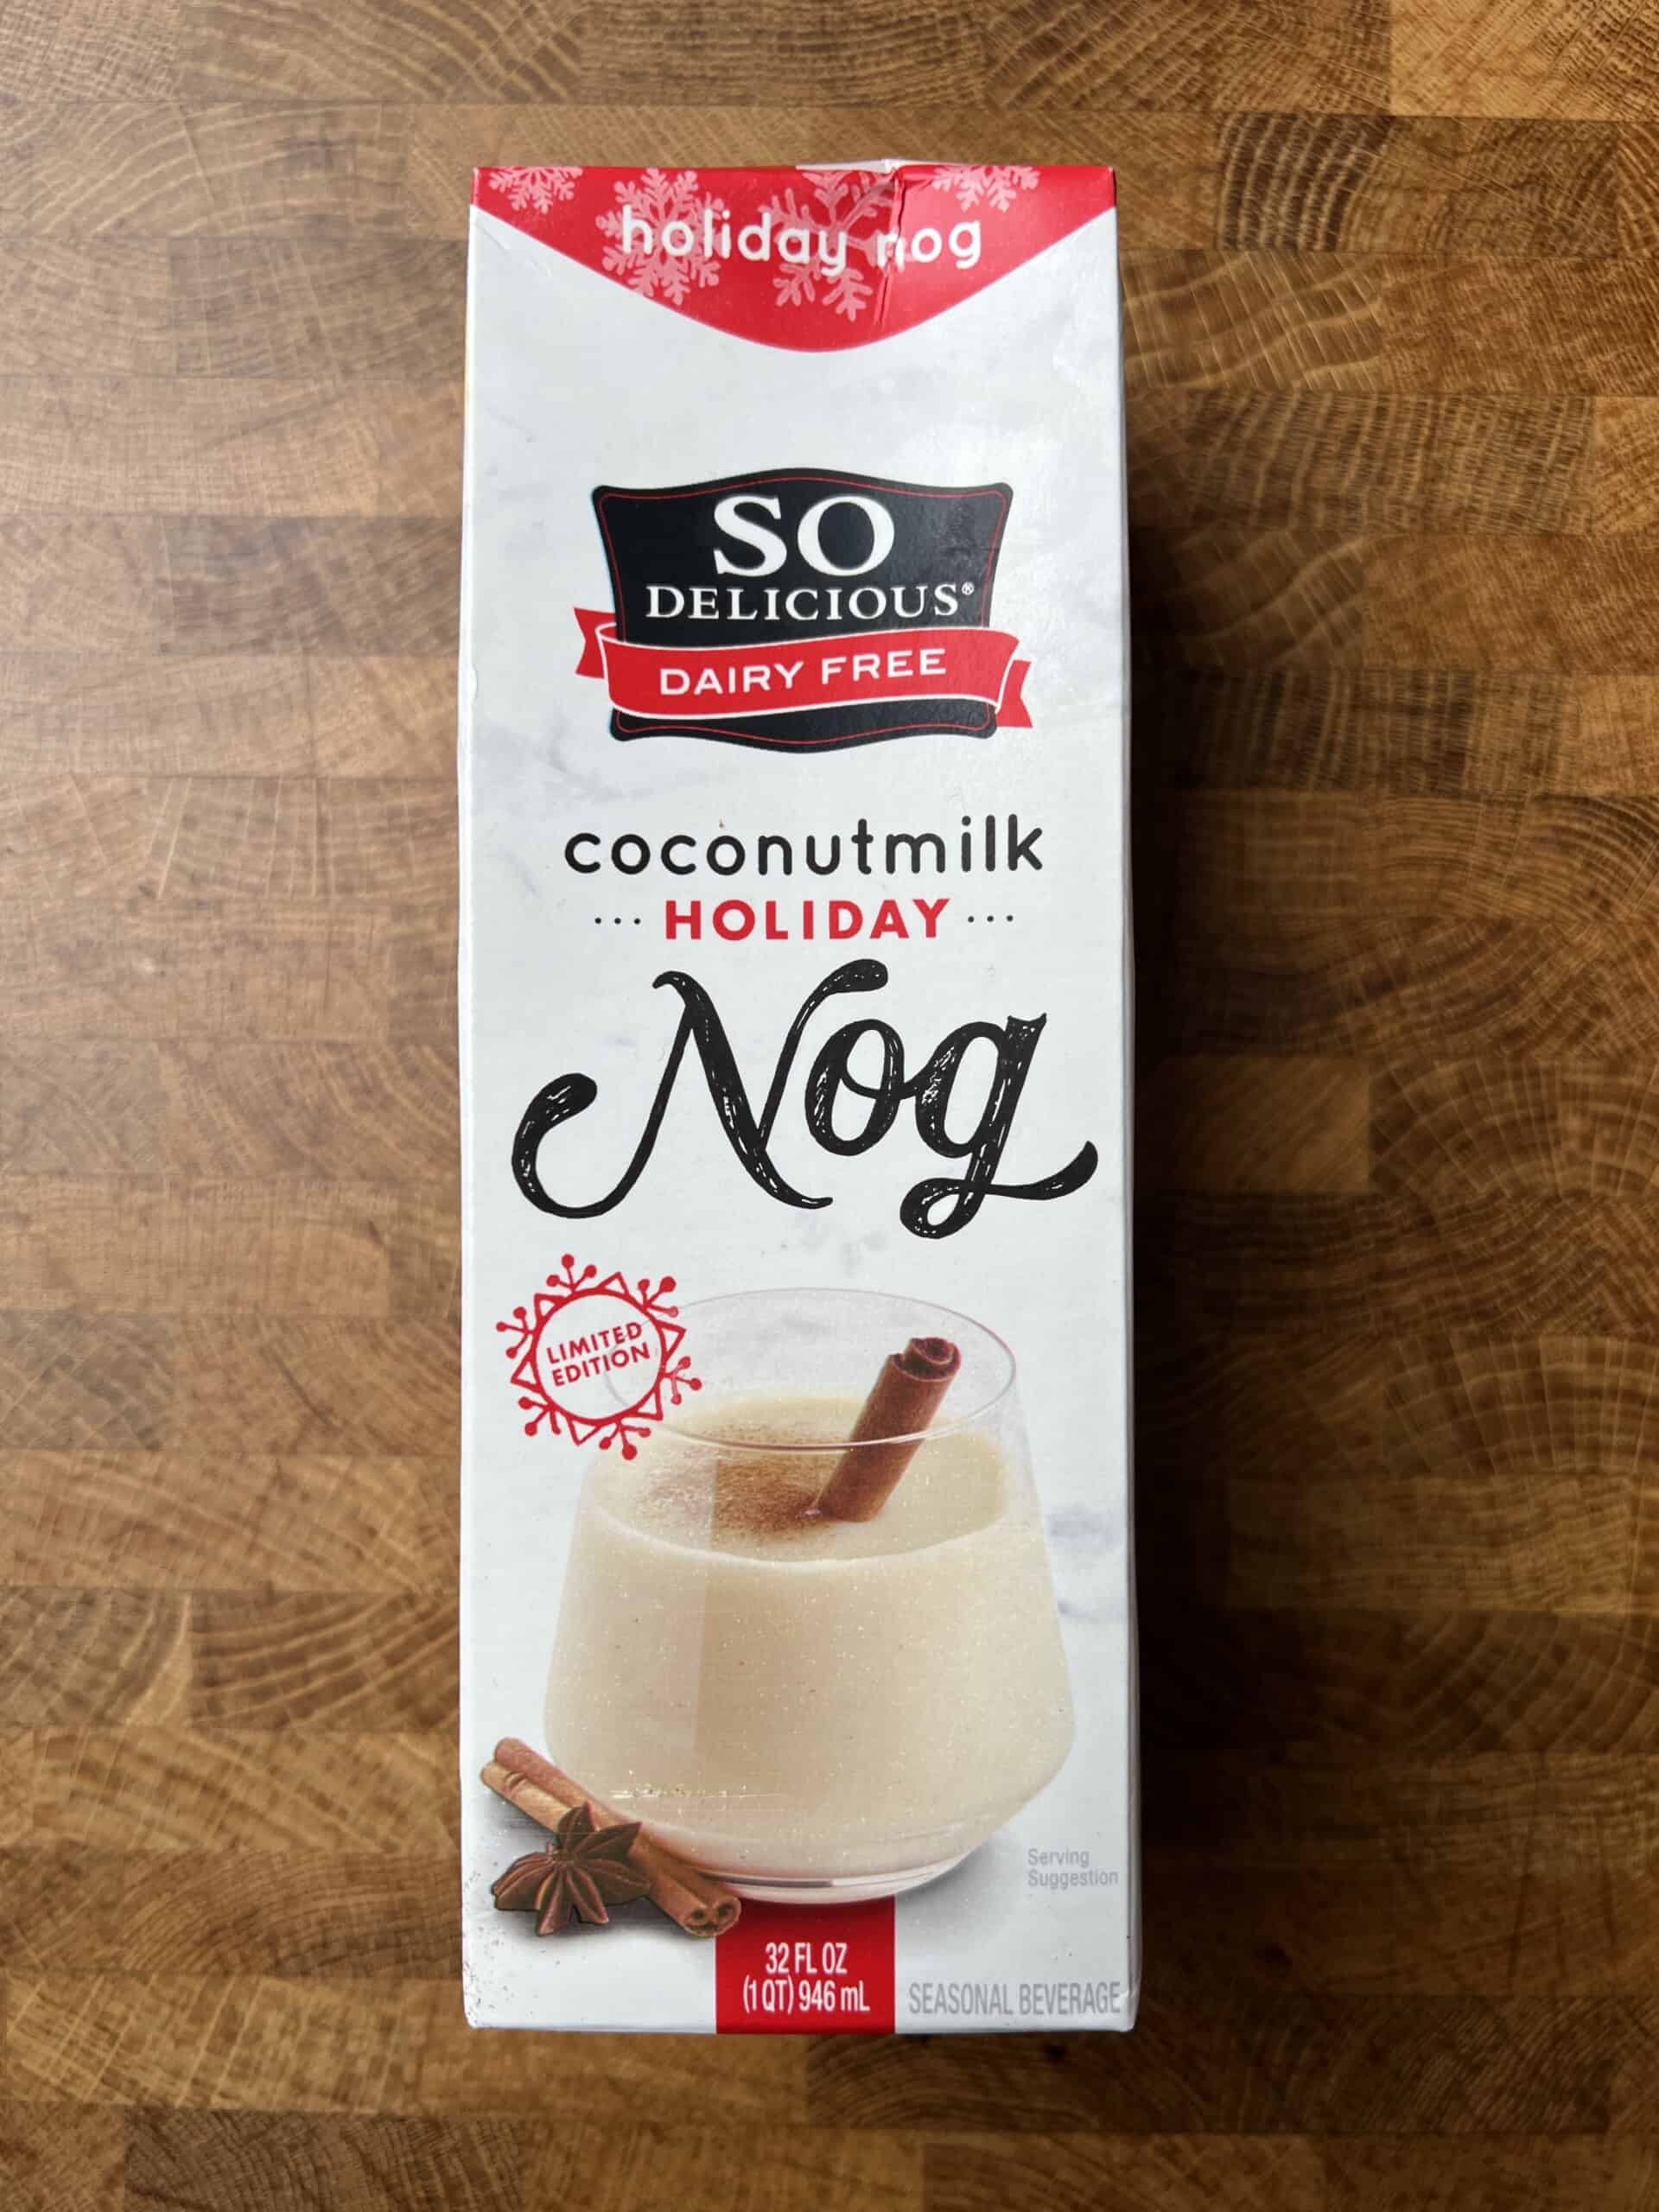 So Delicious Coconutmilk Holiday Nog carton.